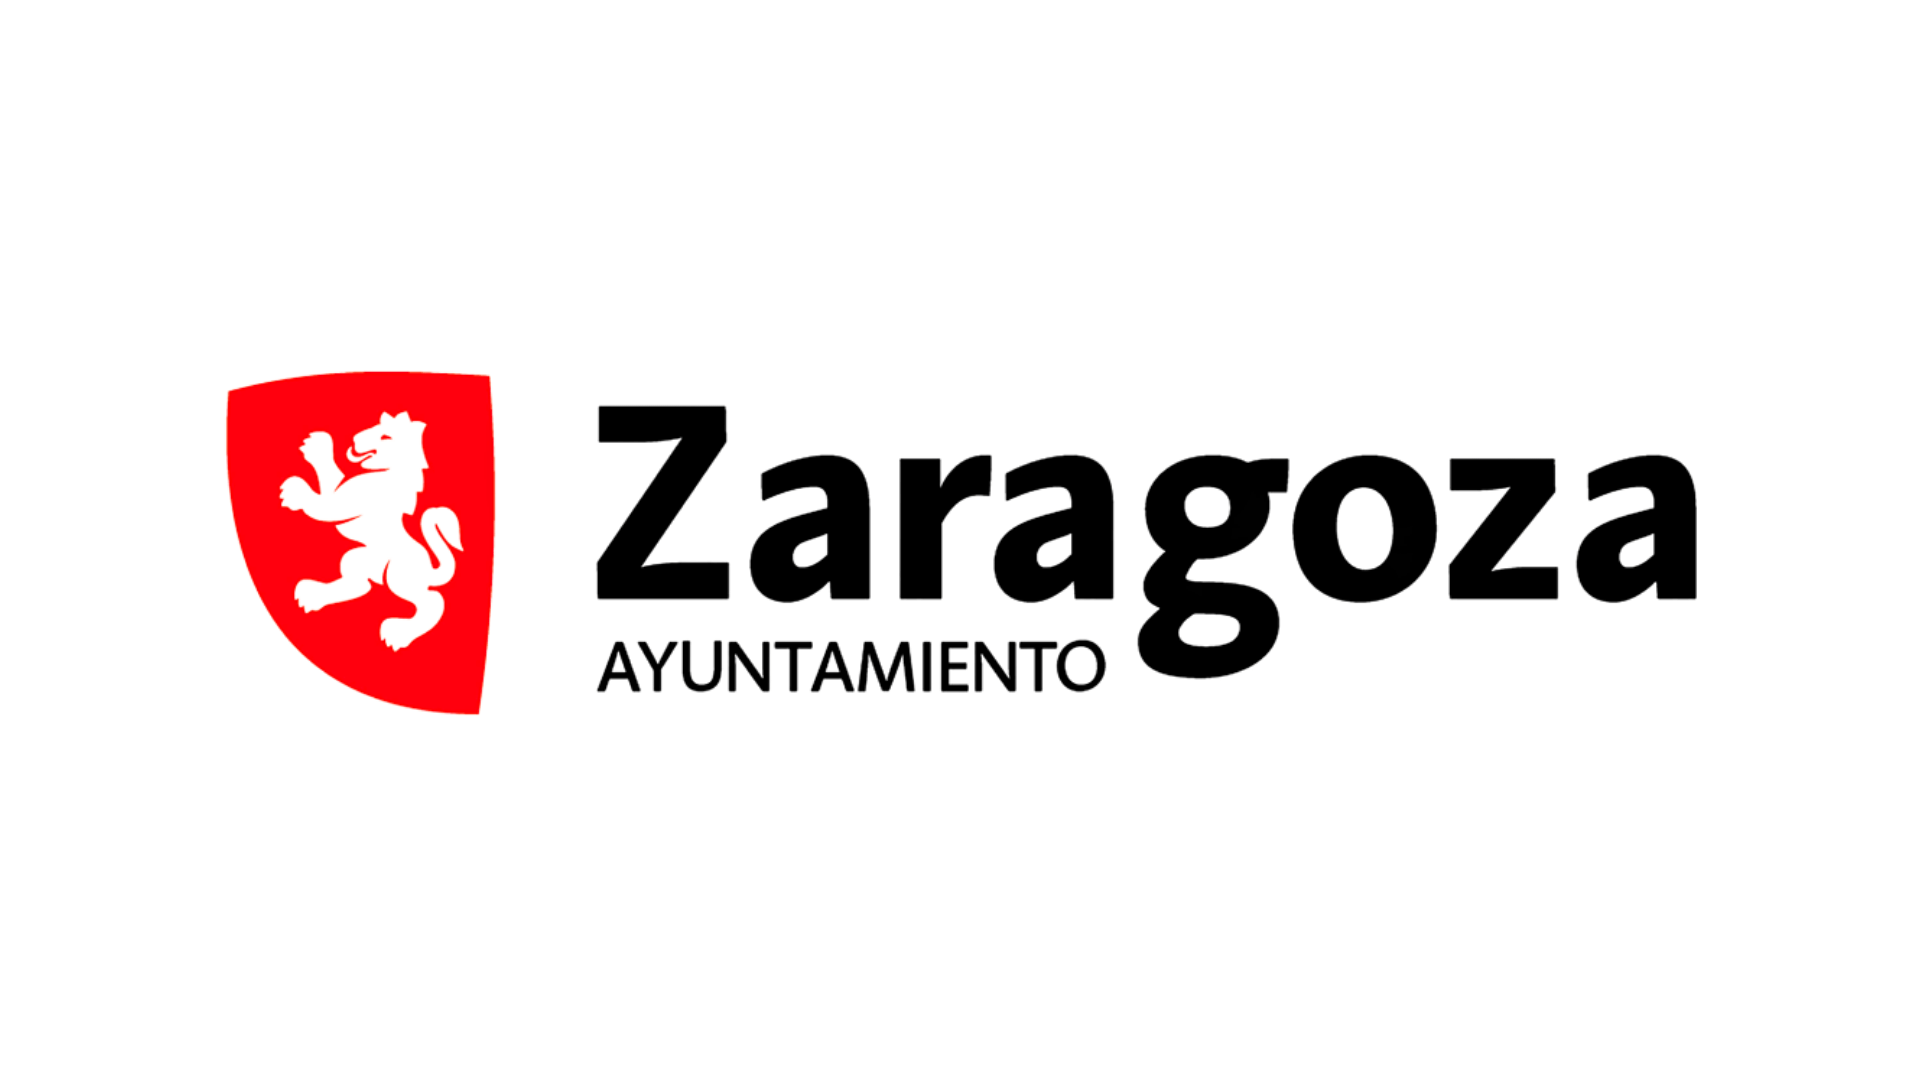 AYUNTAMIENTO DE ZARAGOZA